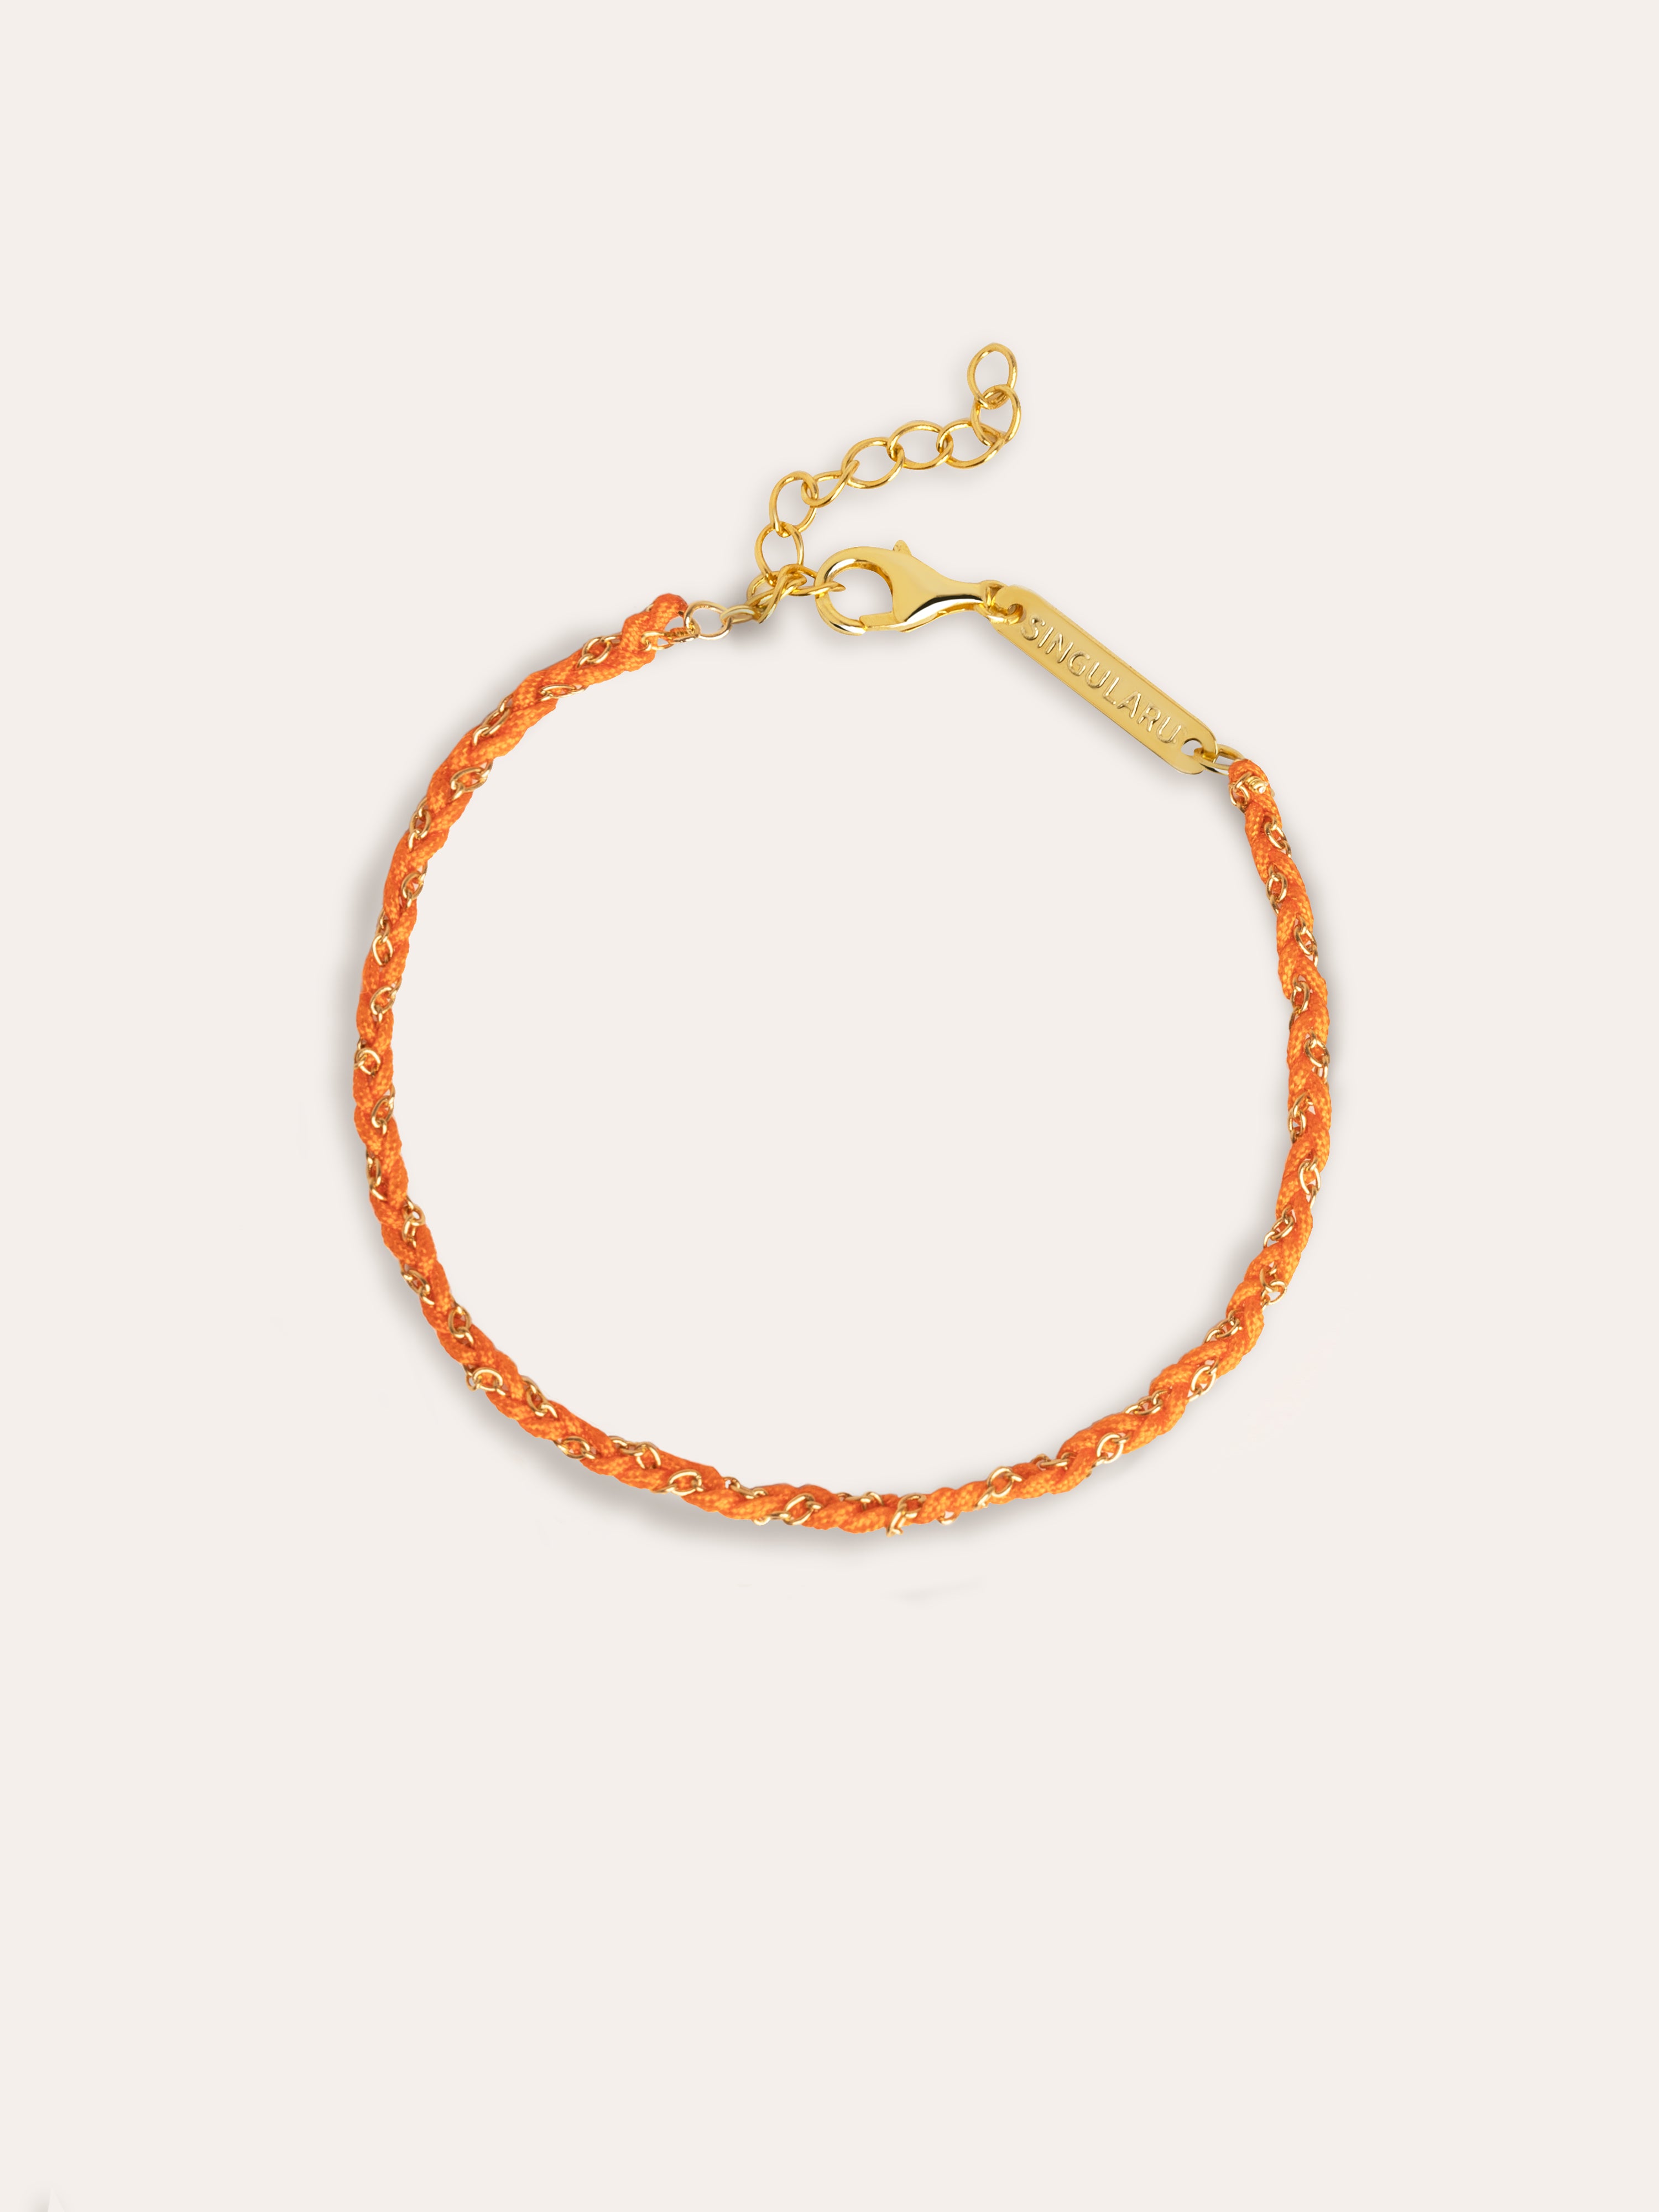 Yarn Orange Gold Bracelet